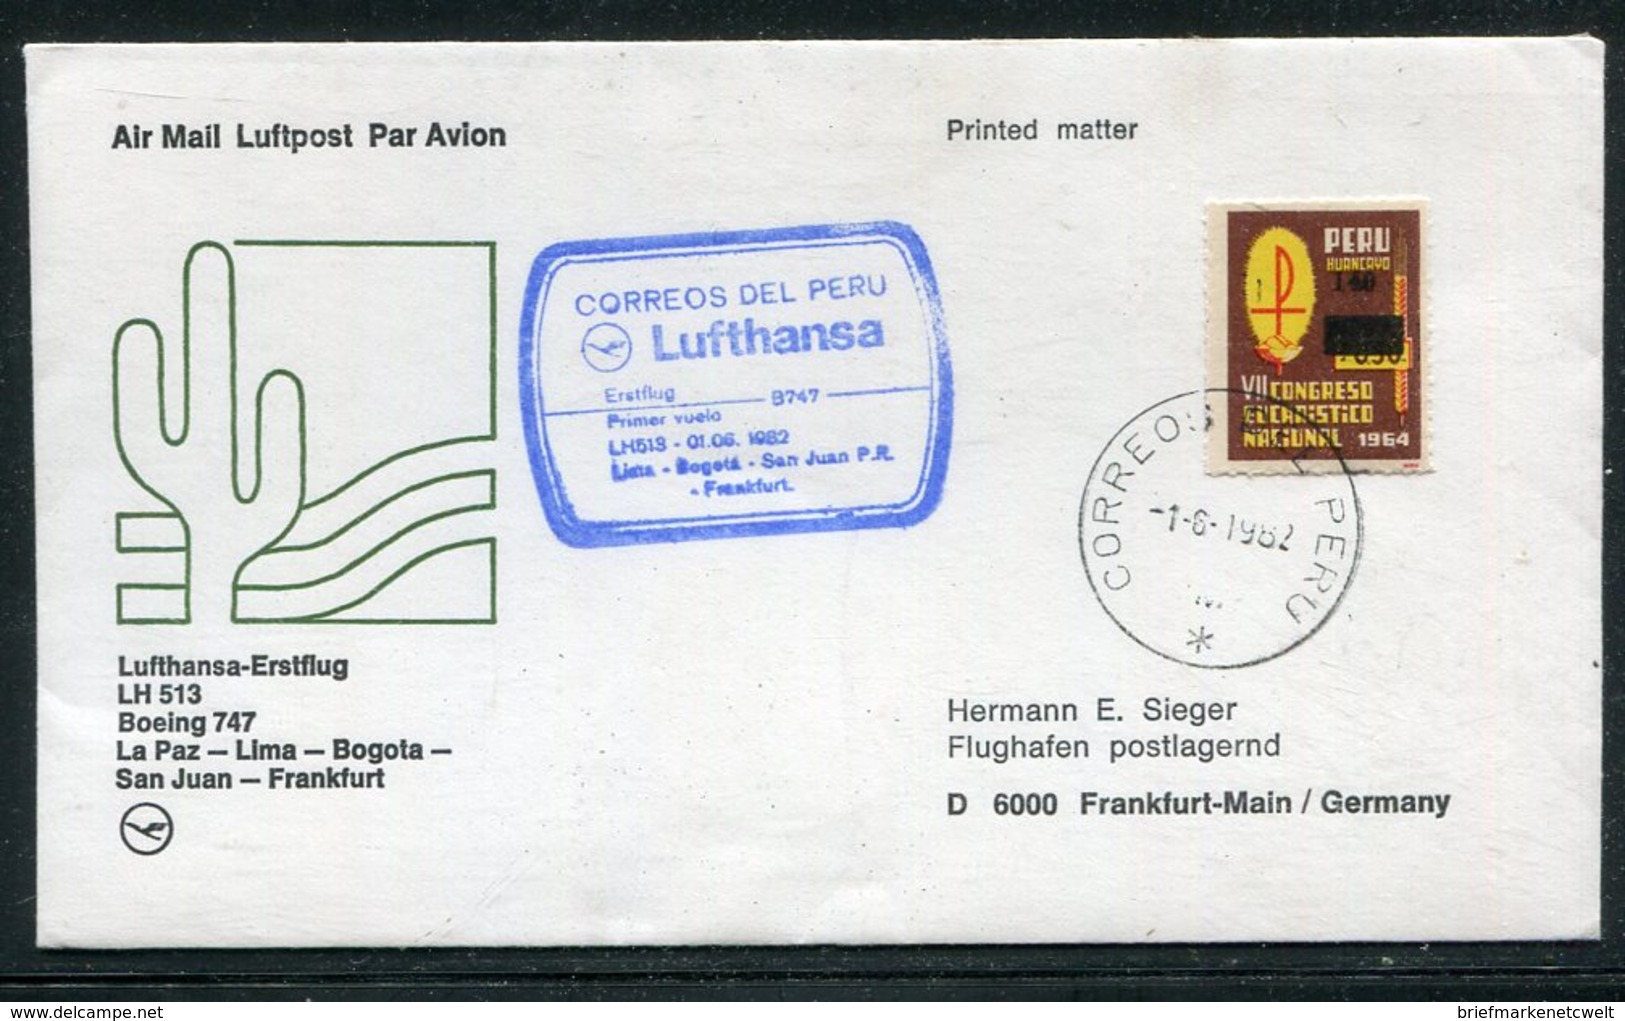 Peru / 1982 / Lufthansa-Erstflugbrief La Paz-Lima-Bogota-San Juan-Frankfurt (18388) - Peru